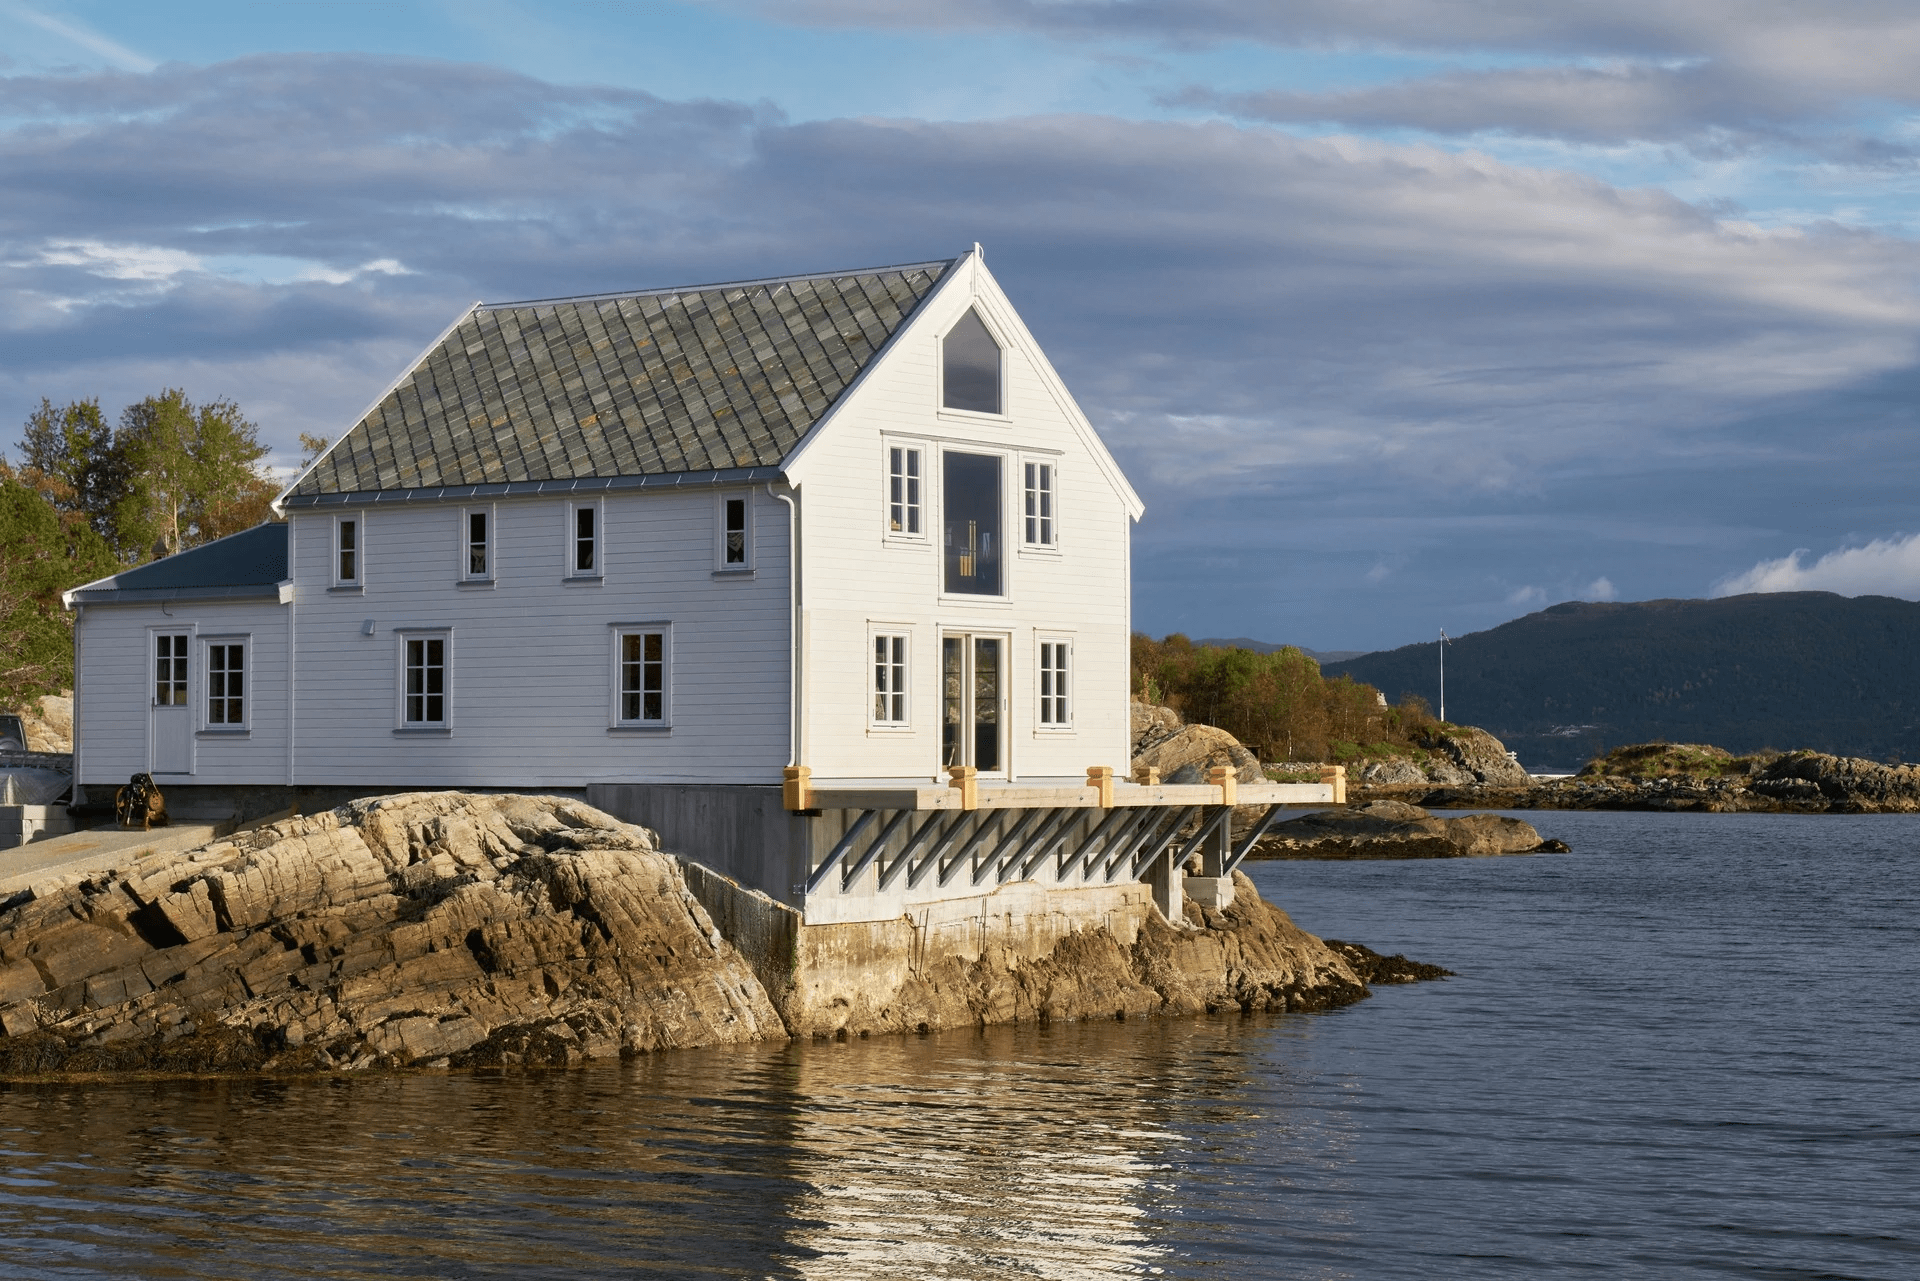 Dům stojí přímo na břehu moře